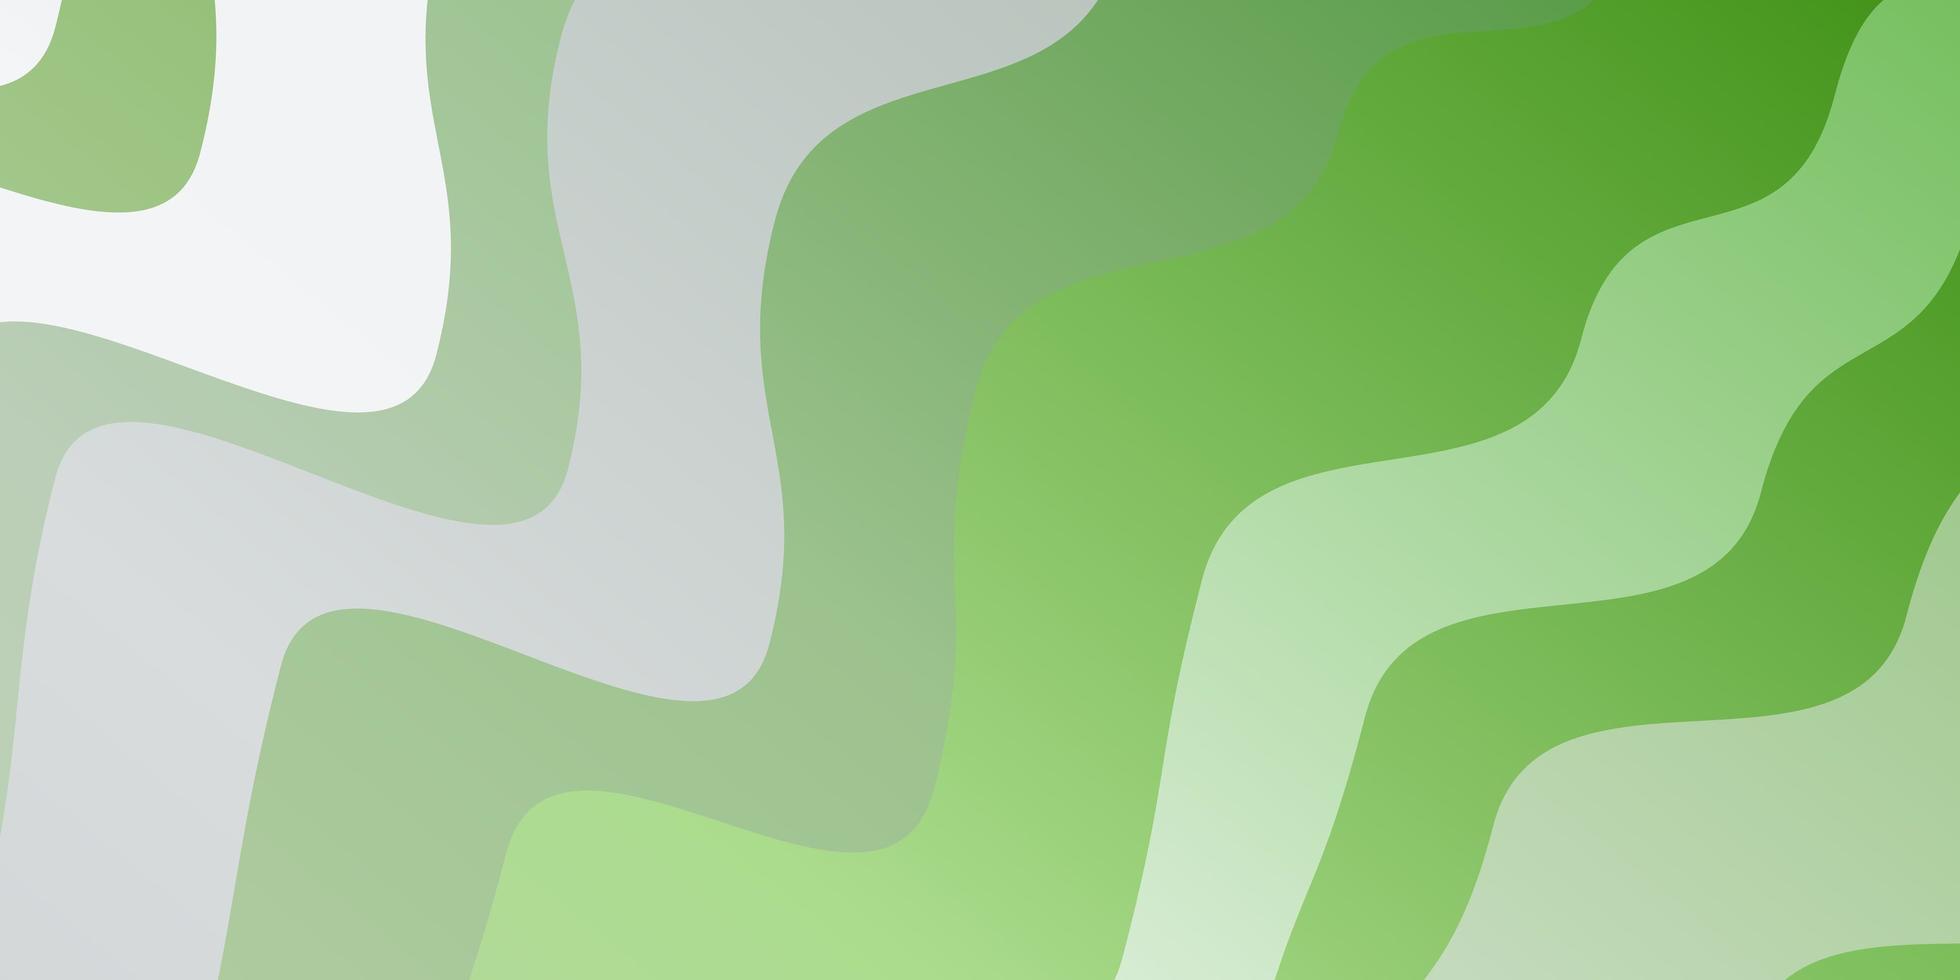 Fondo de vector verde claro con arcos. muestra brillante con formas y líneas curvas de colores. mejor diseño para su anuncio, cartel, banner.